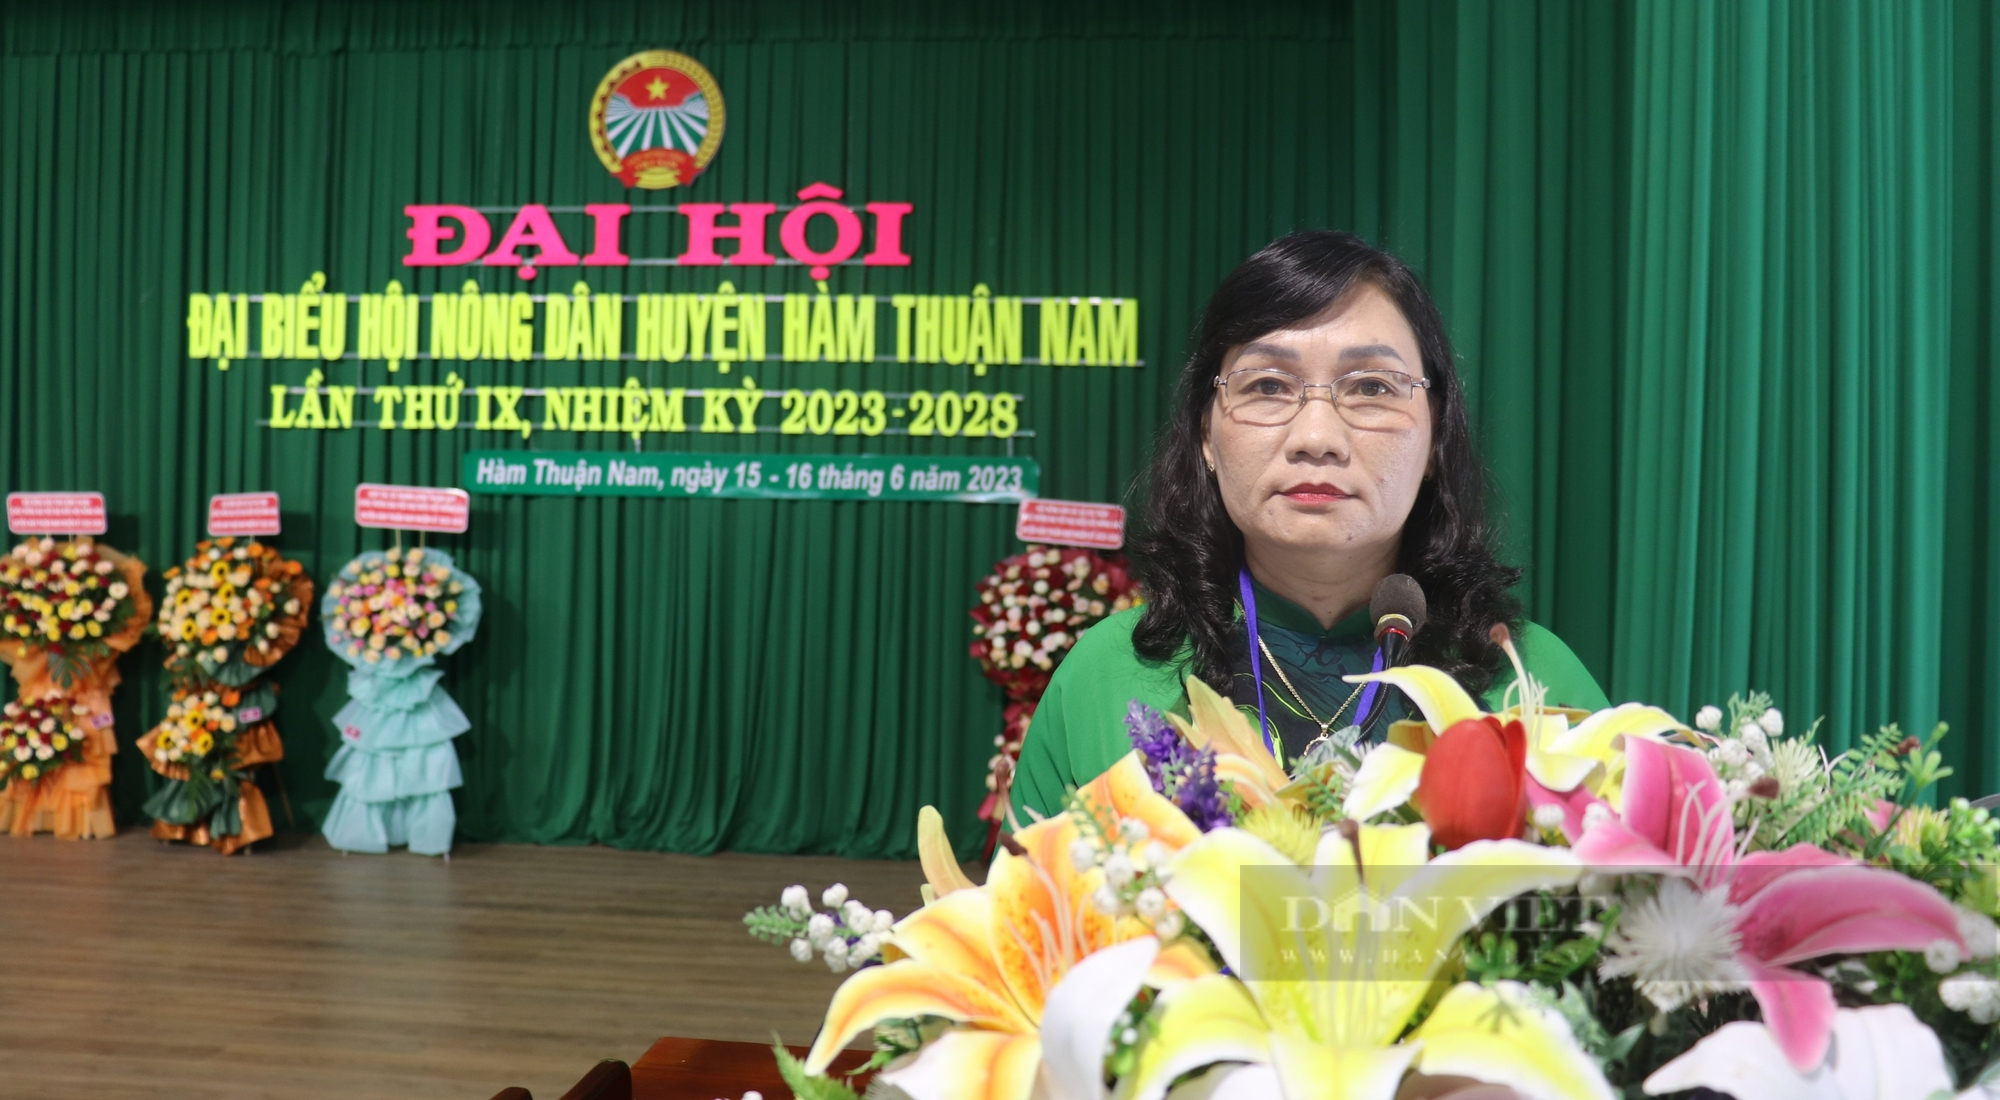 Bình Thuận: Ông Trần Xuân Thủ tái đắc cử chức Chủ tịch Hội Nông dân huyện Hàm Thuận Nam - Ảnh 5.